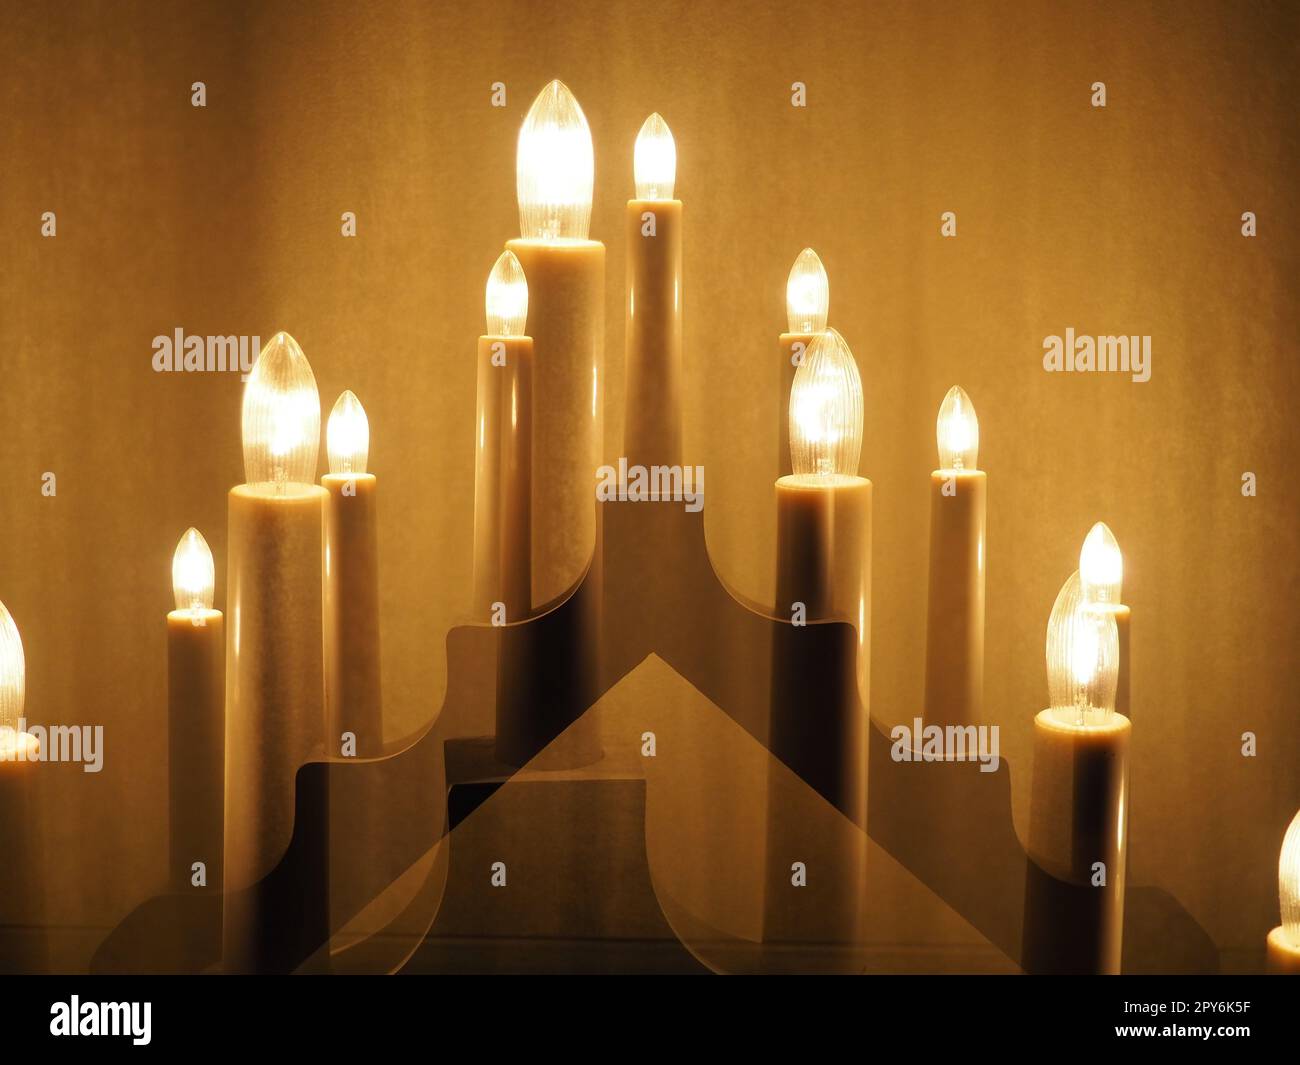 Lampe sous forme de bougies. Symbole scandinave de bienvenue. Noël festif ou nouvel an, l'éclairage chaleureux d'une maison ou d'un appartement. Créer une atmosphère festive Banque D'Images